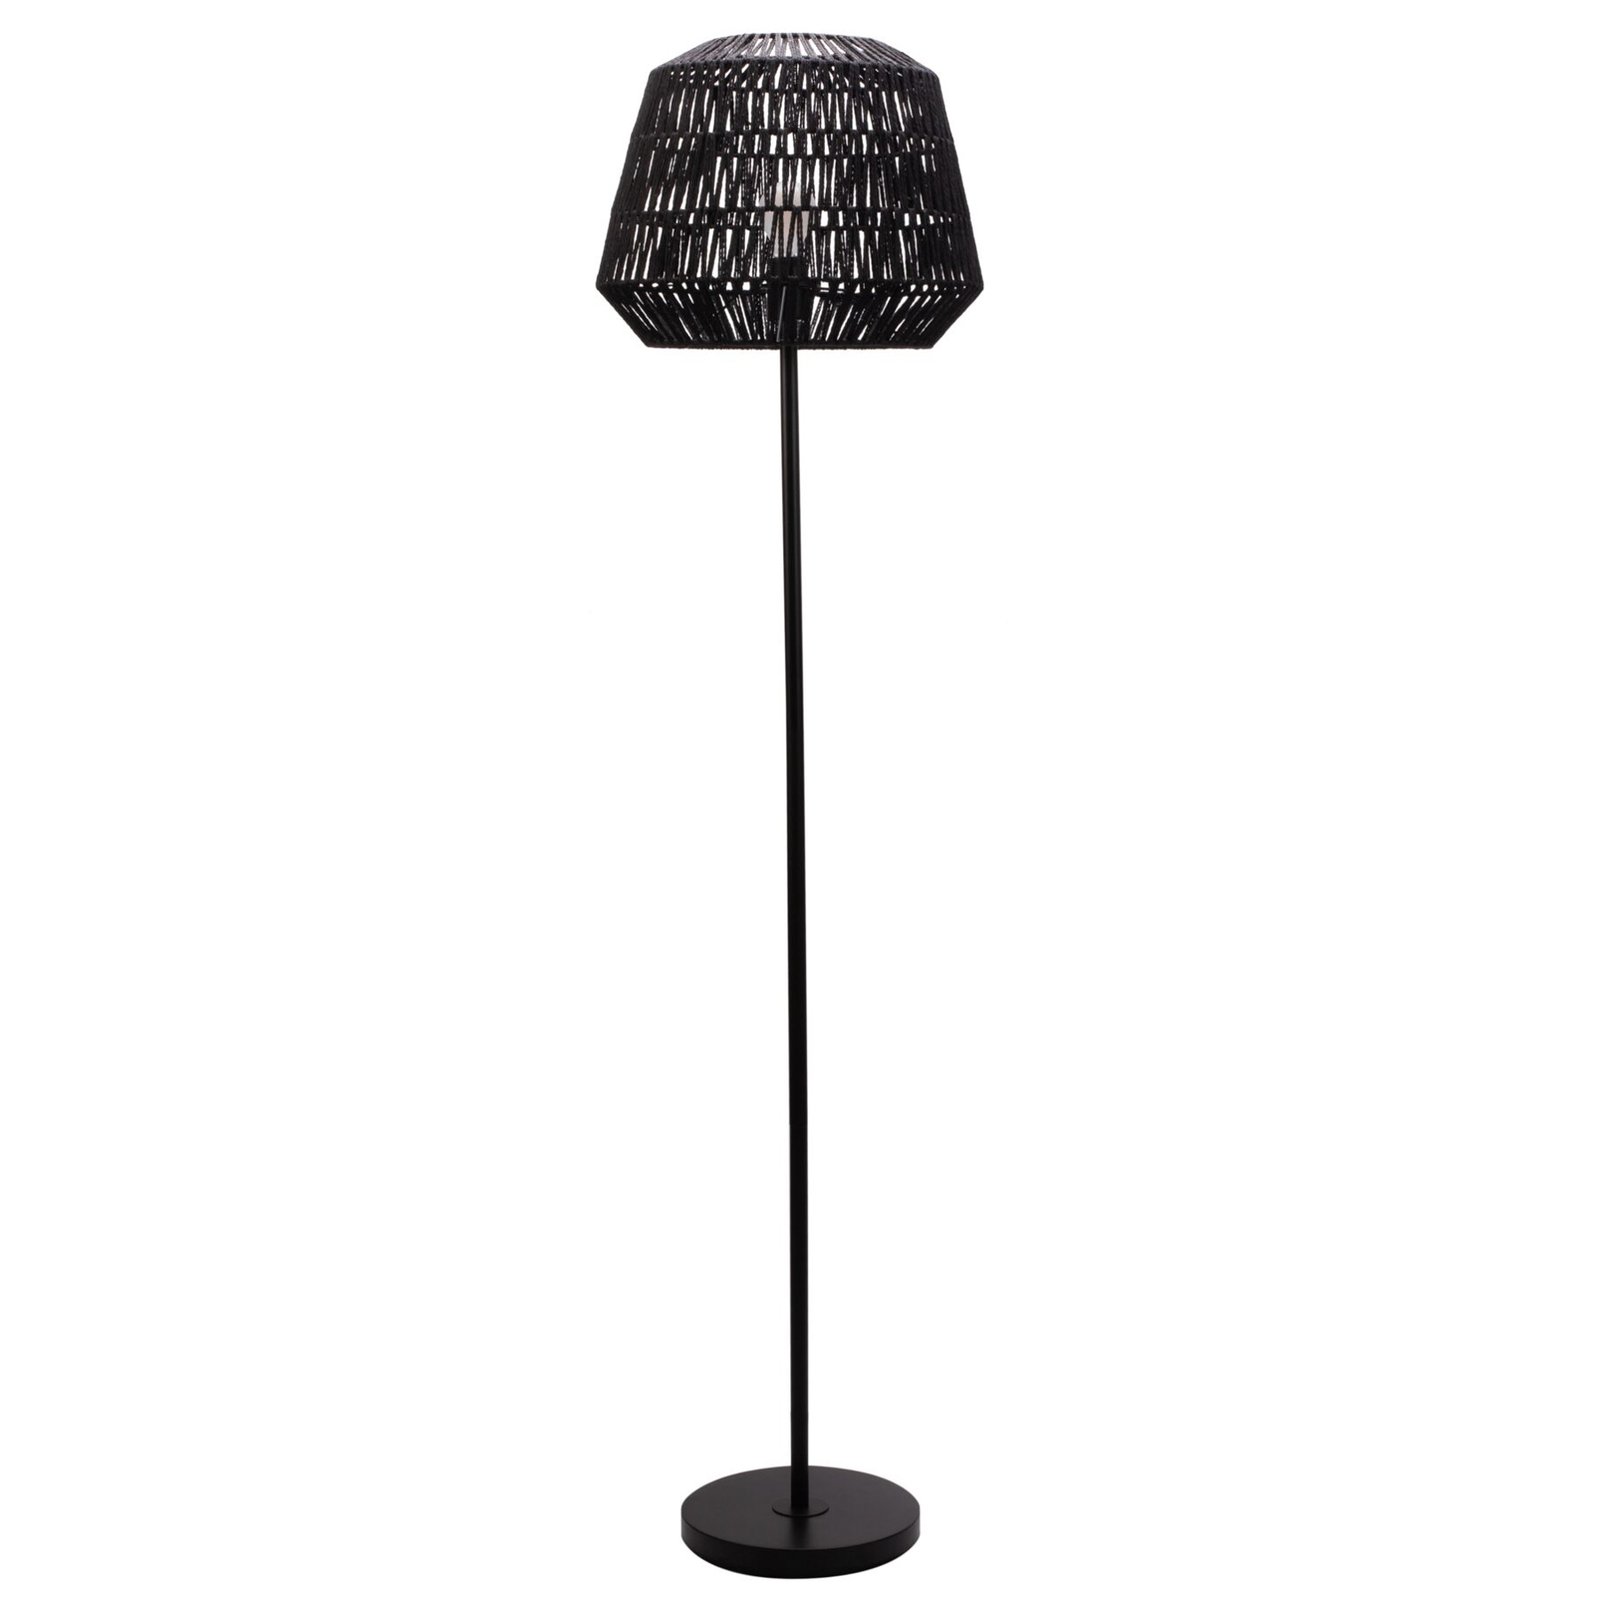 Pauleen Timber Pearl floor lamp, mesh lampshade